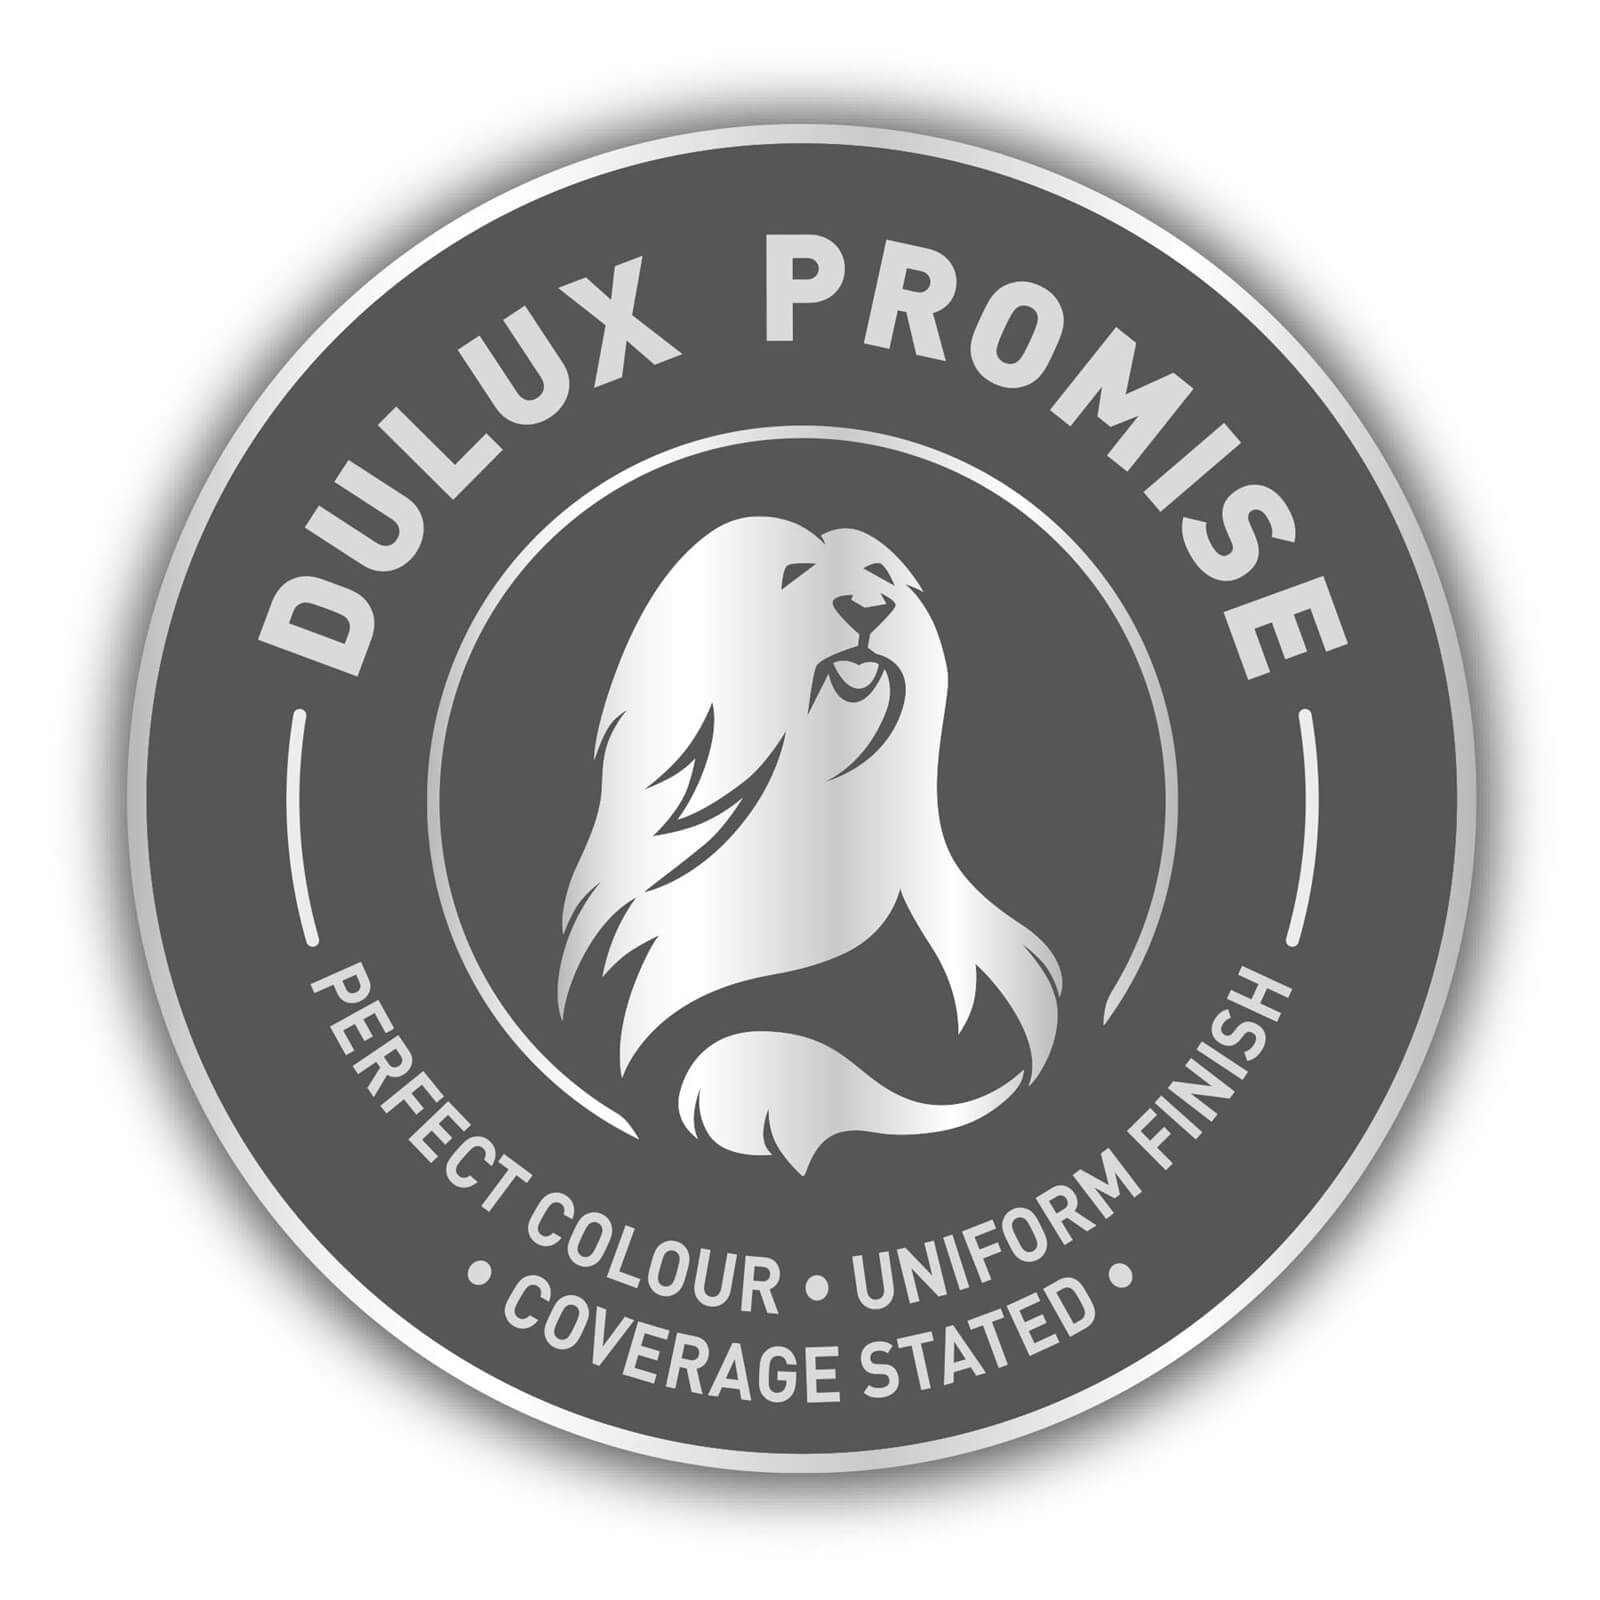 Dulux Matt Emulsion Paint Ivory - 5L